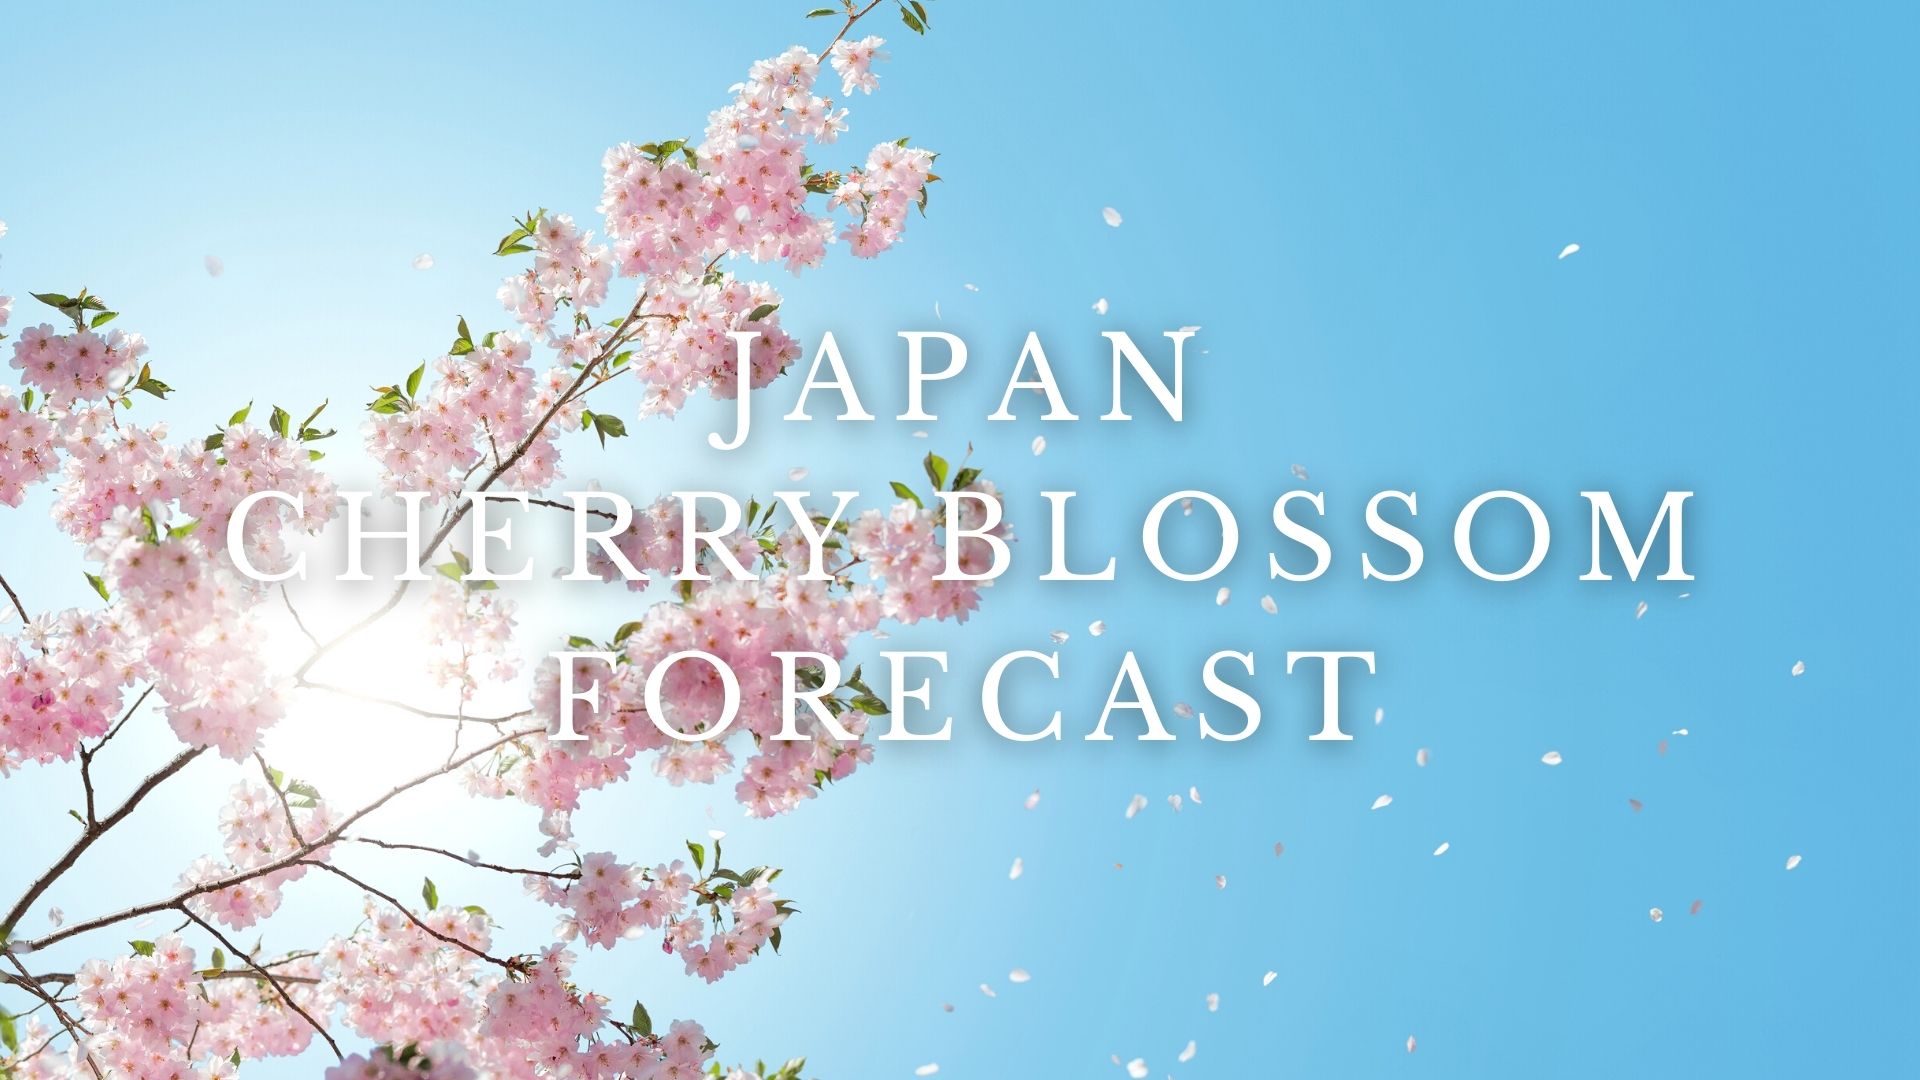 Japan Cherry Blossom Forecast 2022